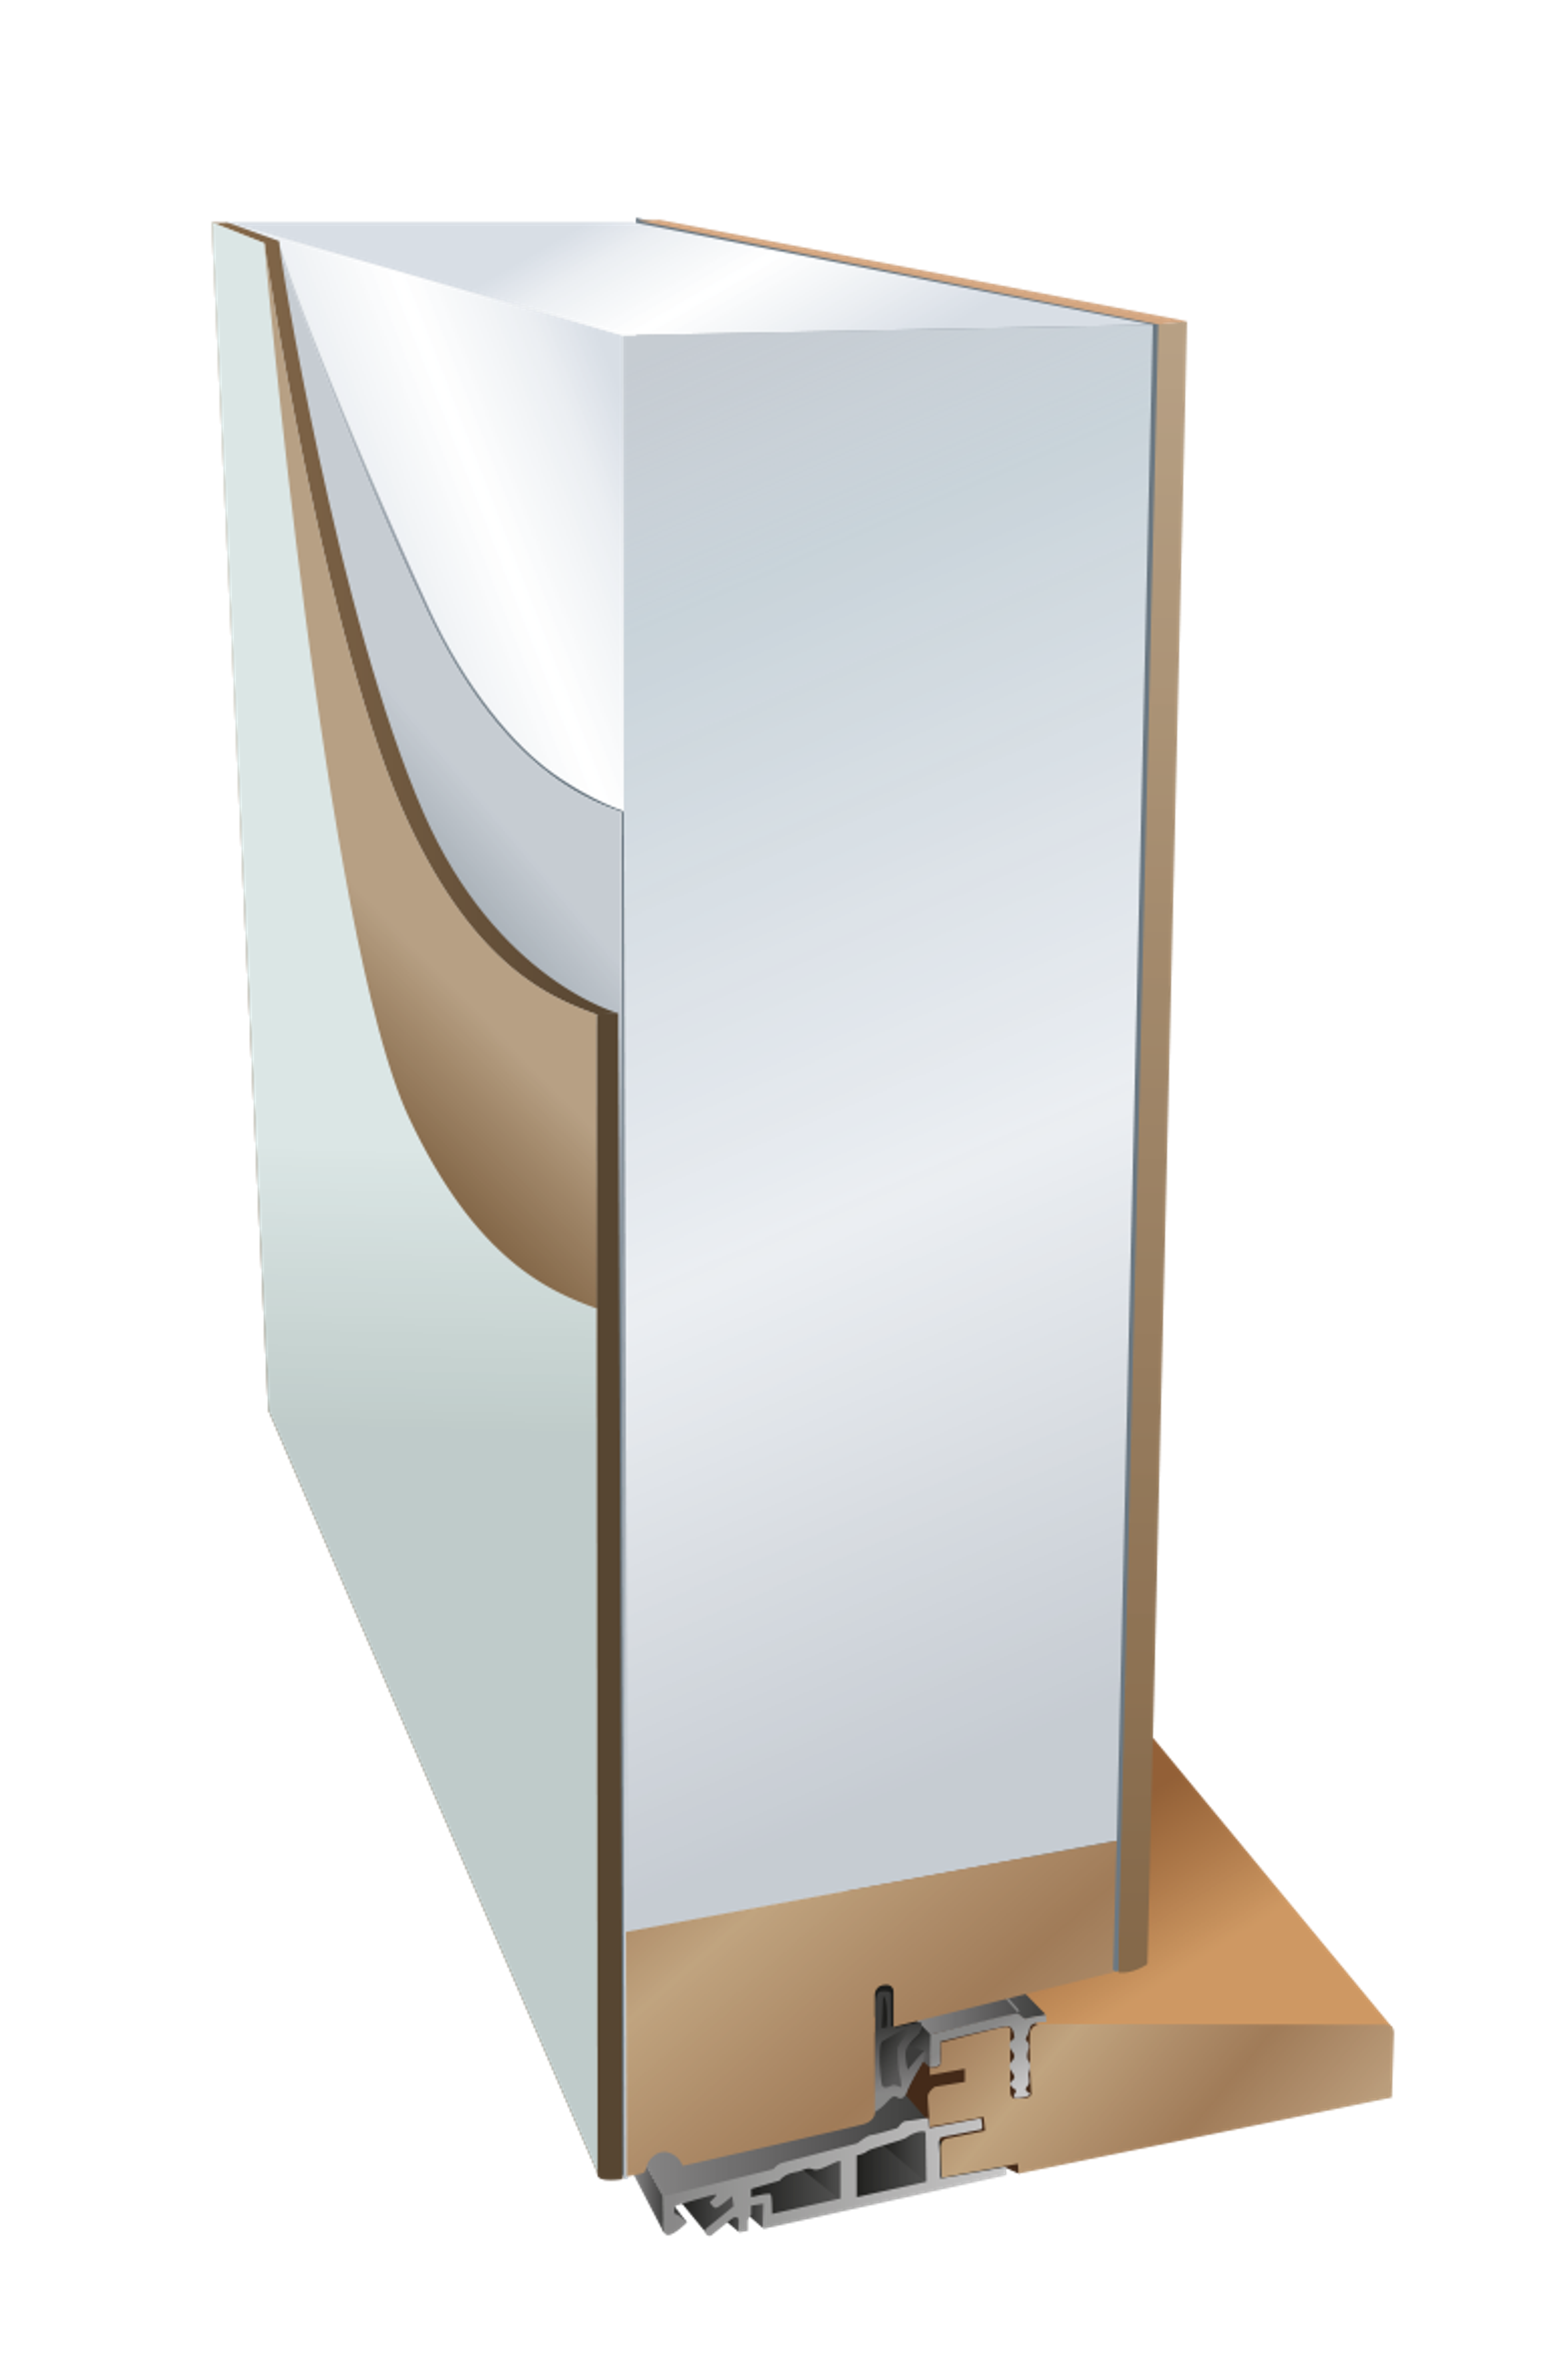 Harmonie sine standard ytterdører har hele 78mm tykkelse på dørbladet